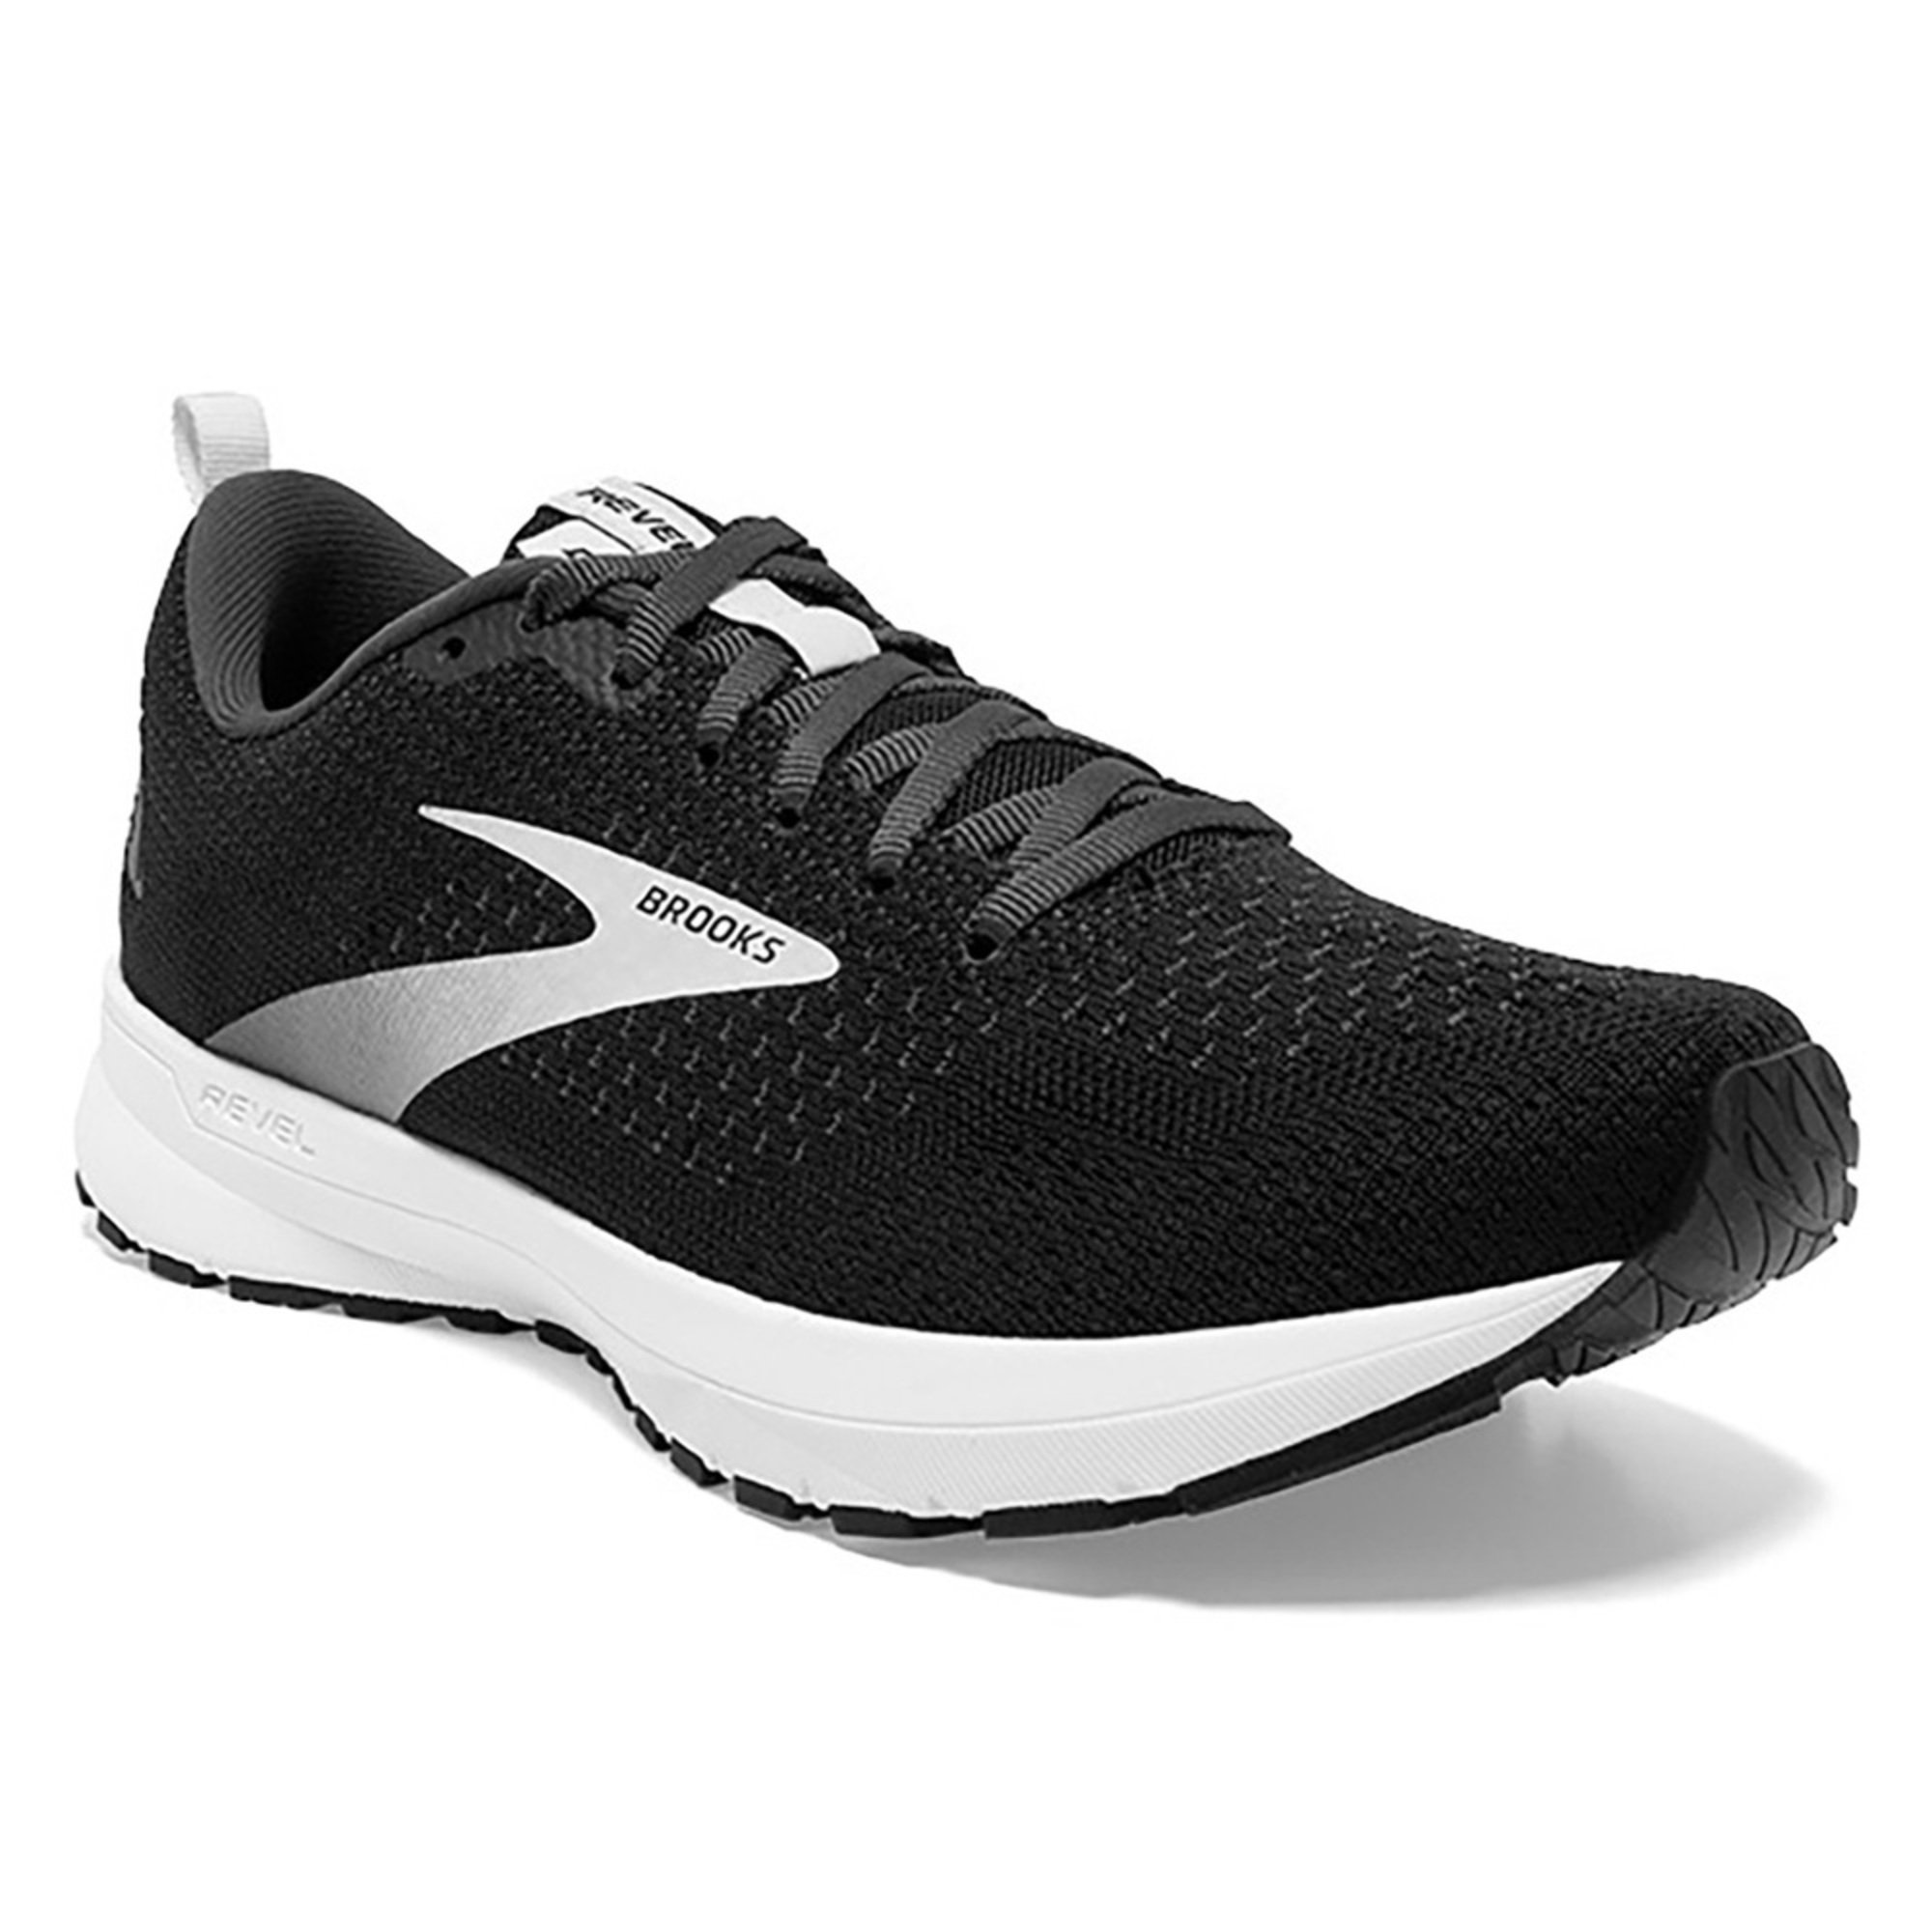 revel running shoes